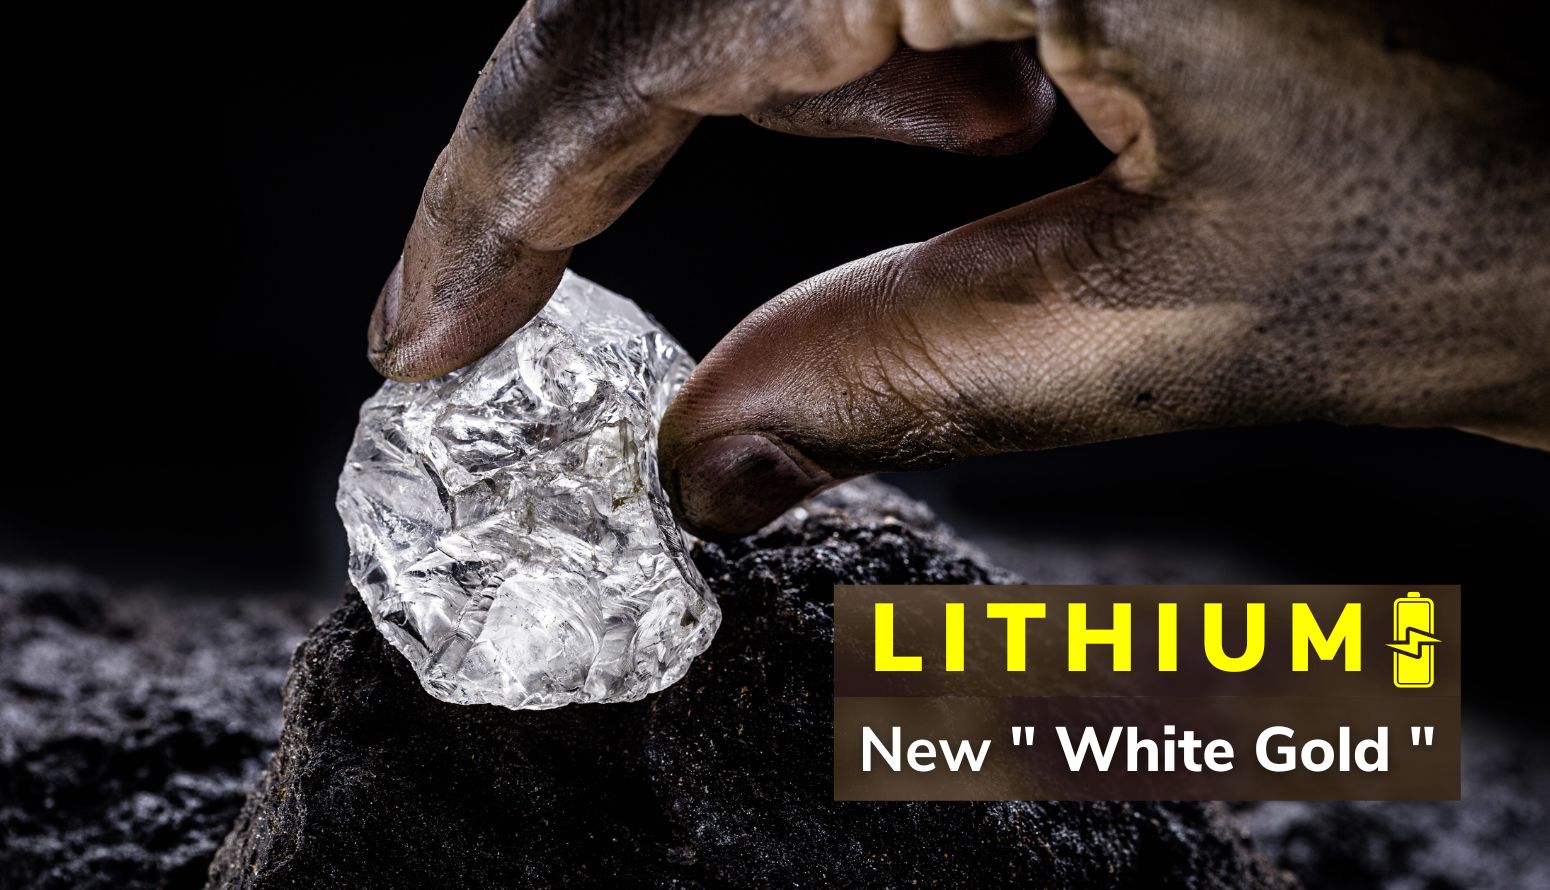 https://e-vehicleinfo.com/lithium-the-new-white-gold/